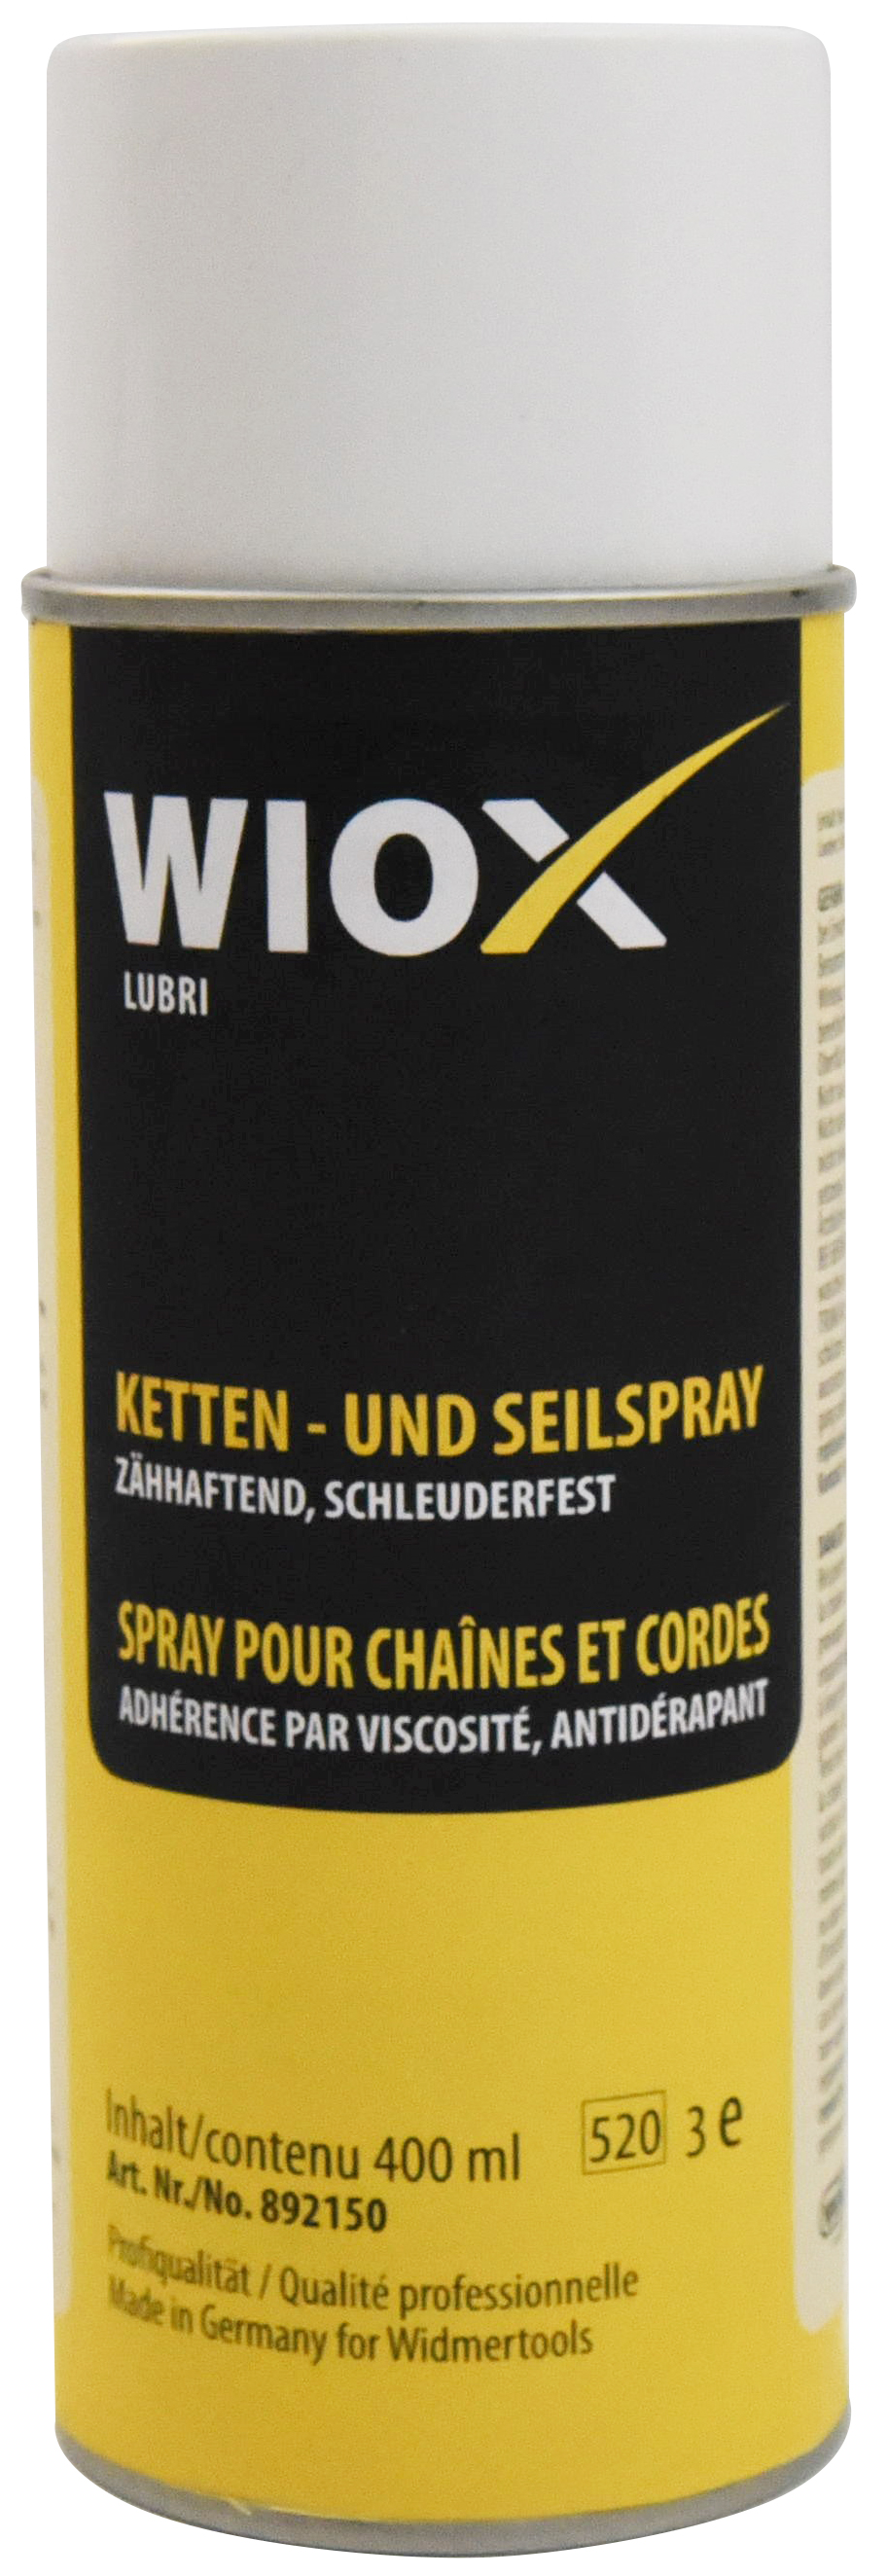 Spray pour chaines et cordes WIOX 400ml